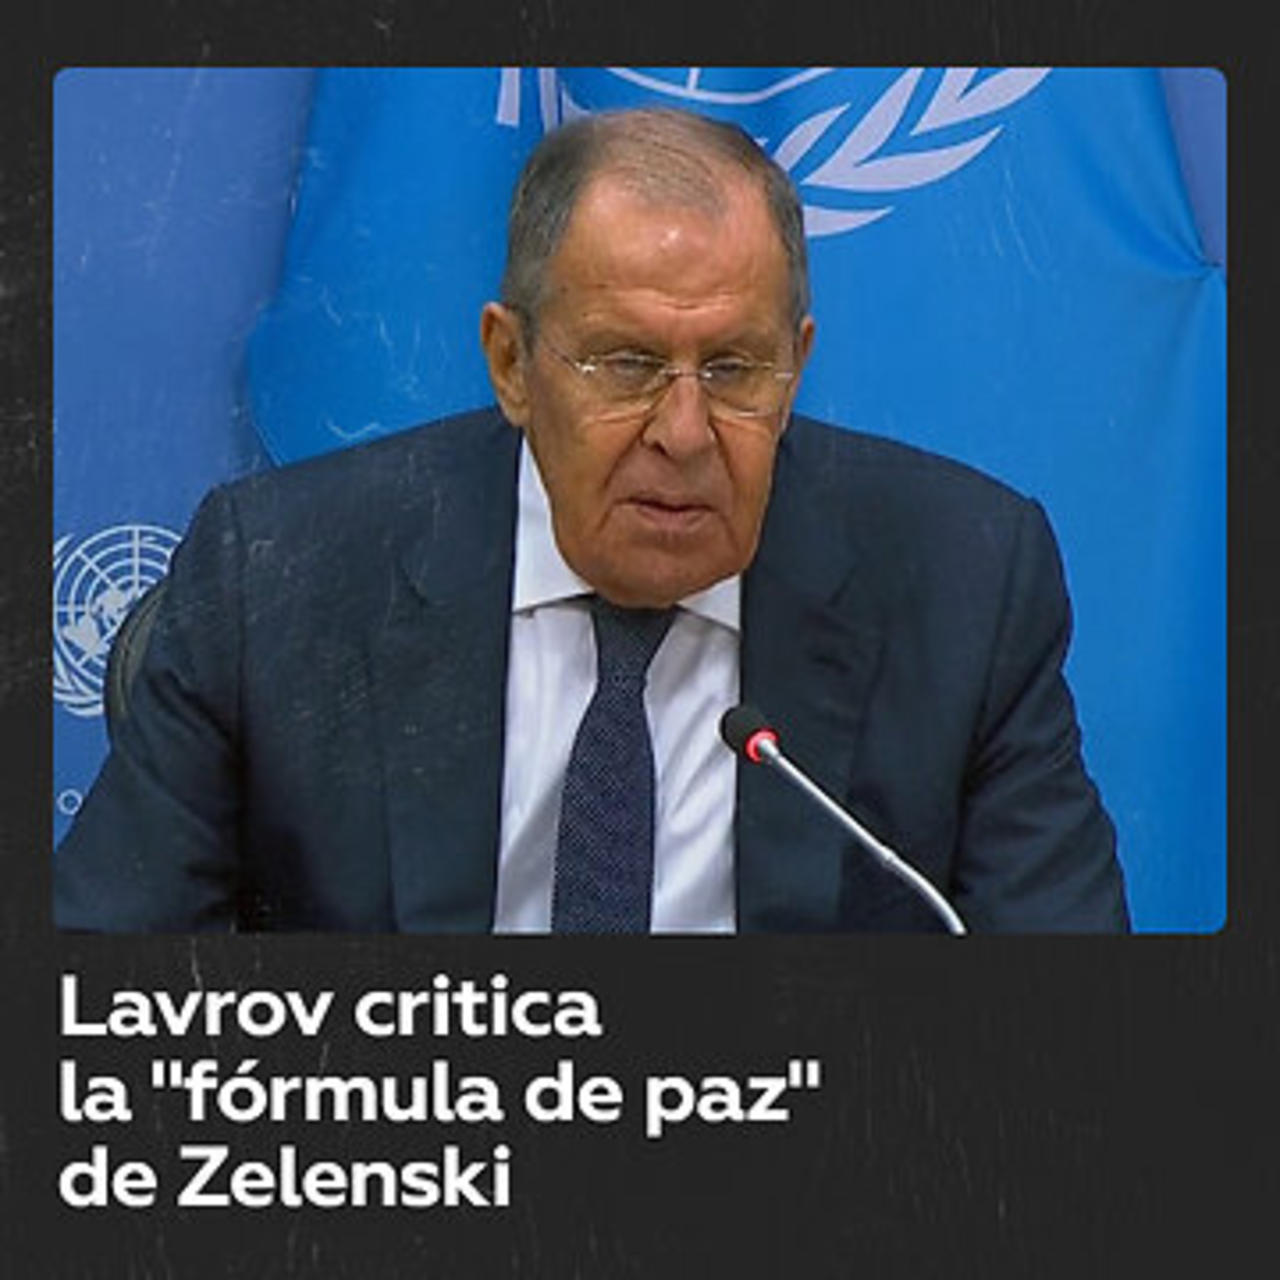 Lavrov critica la “fórmula de paz” de Zelenski